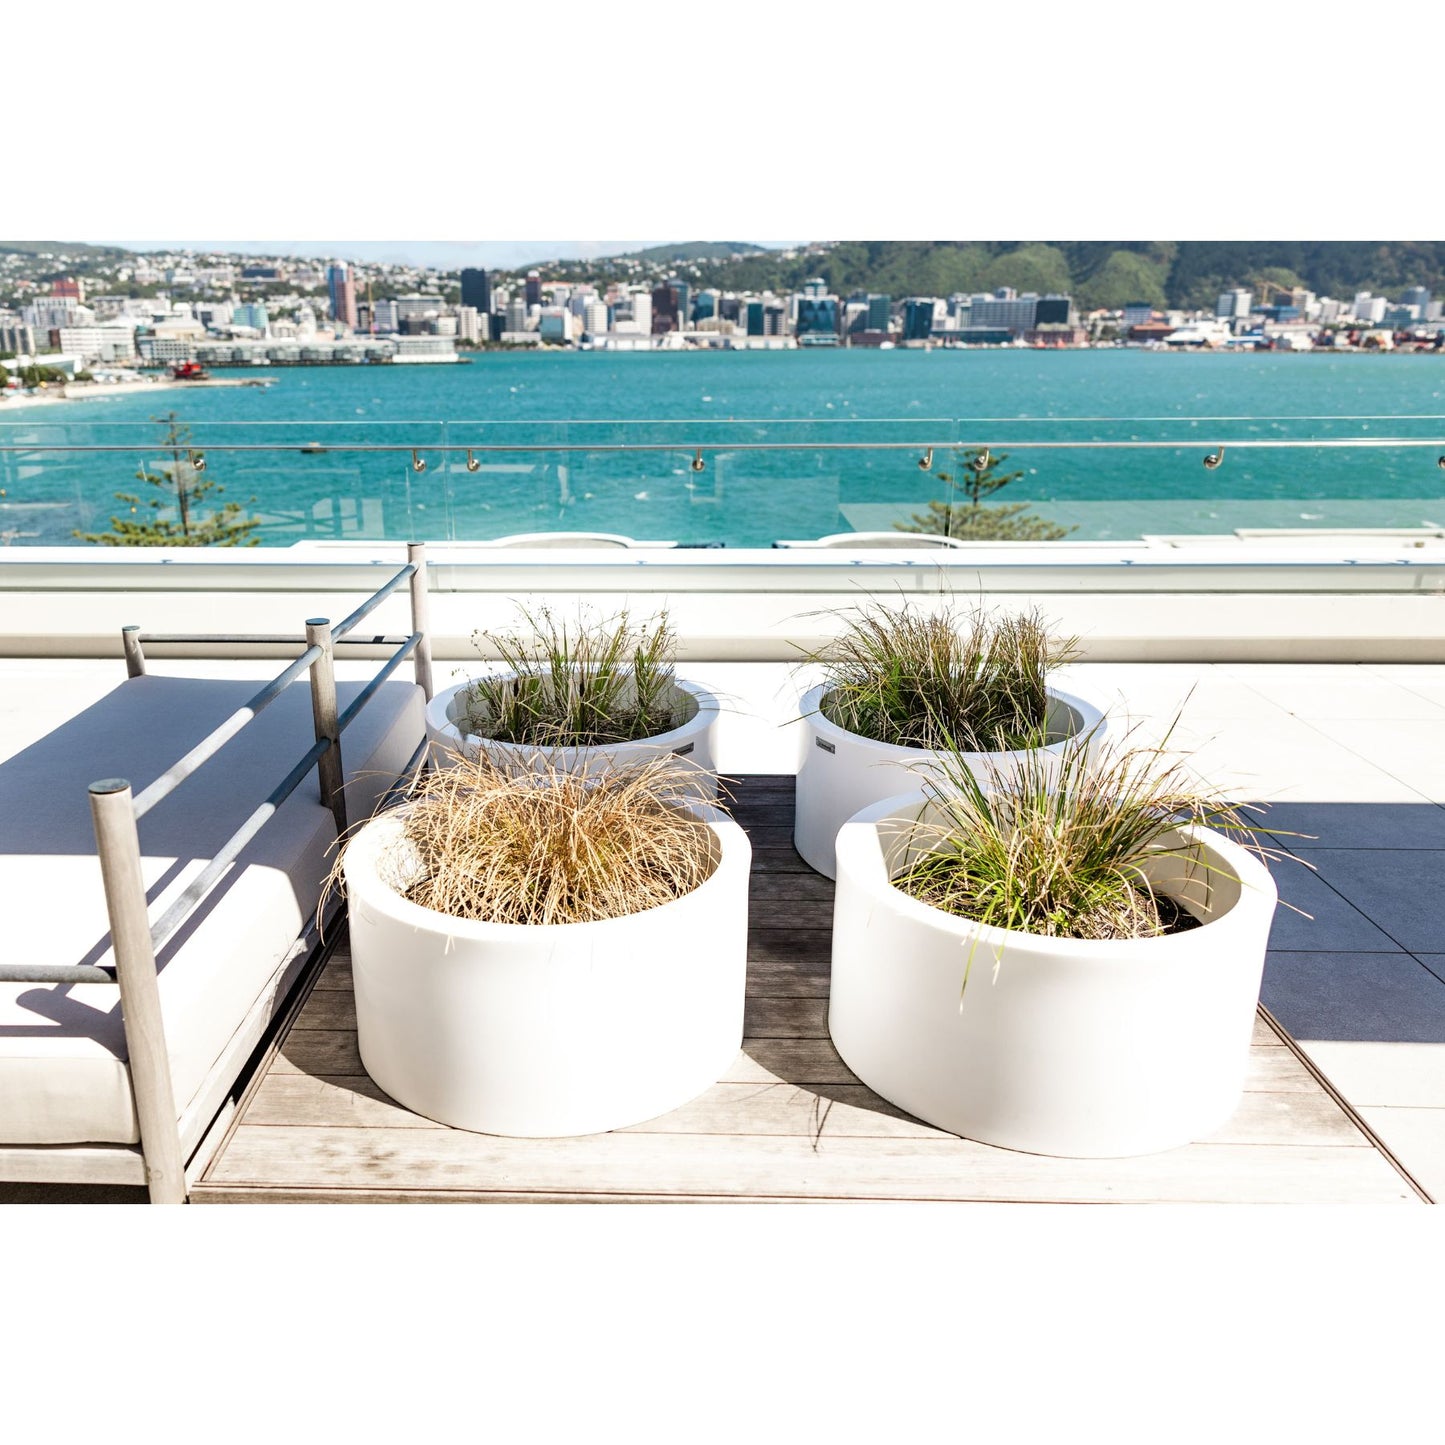 Modscene cylinder planter pots on a balcony.  